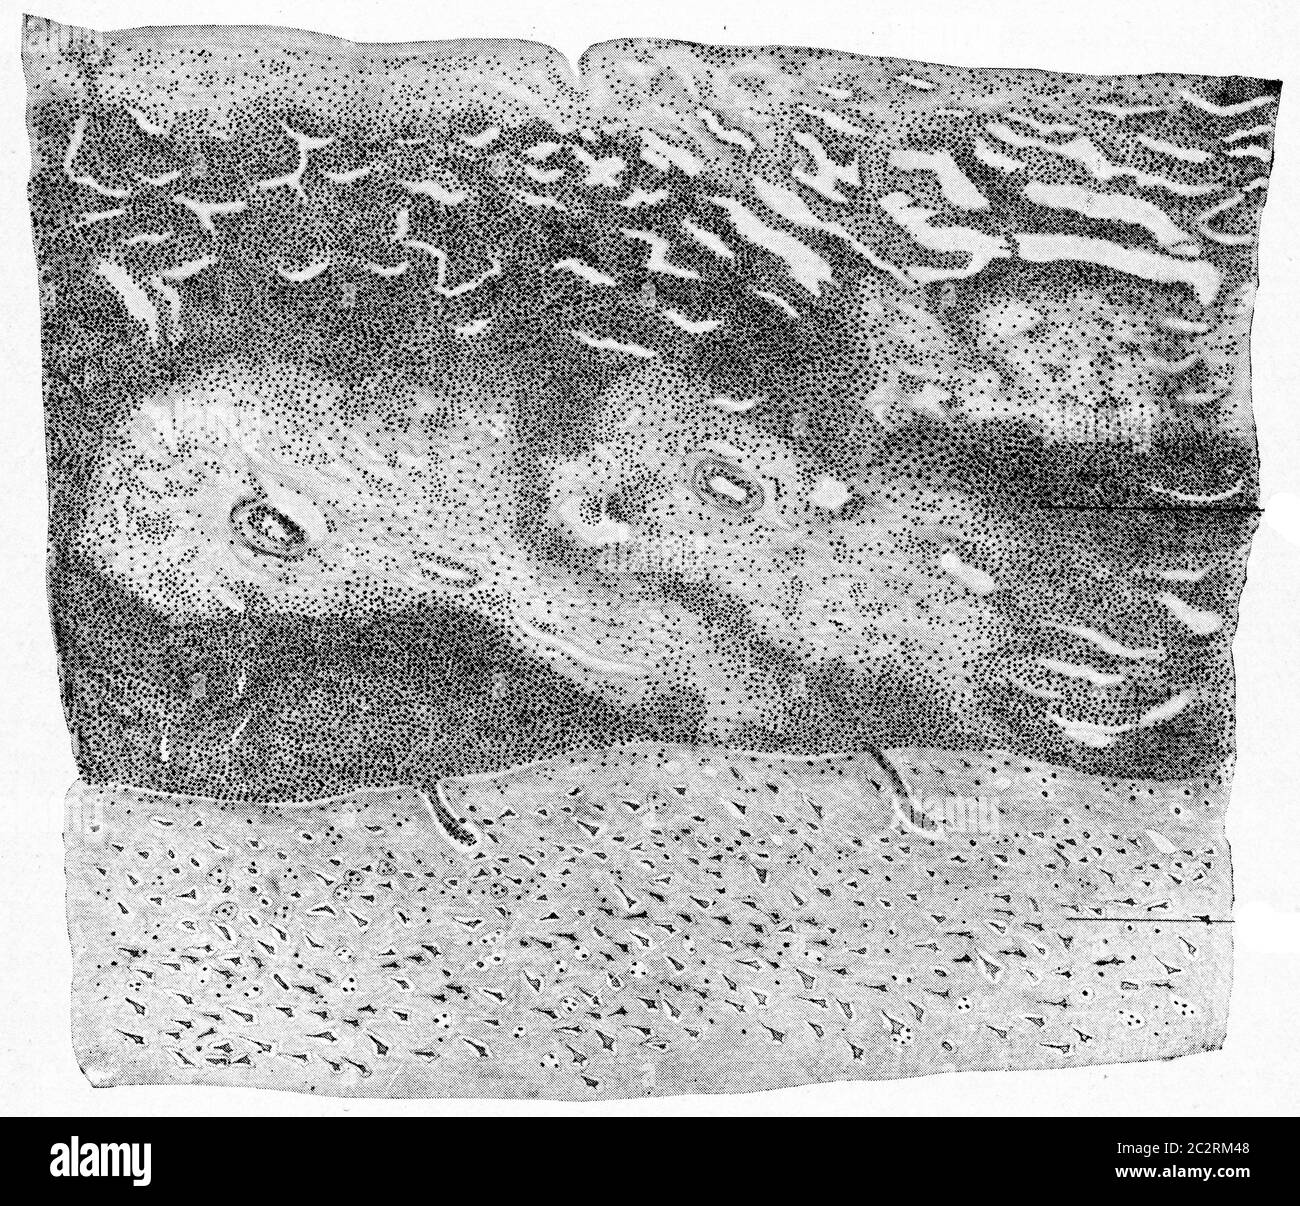 Schnitt der Großhirnrinde und Hirnhäute aus einem Fall von supurativer Meningitis, Vintage gravierte Abbildung. Stockfoto